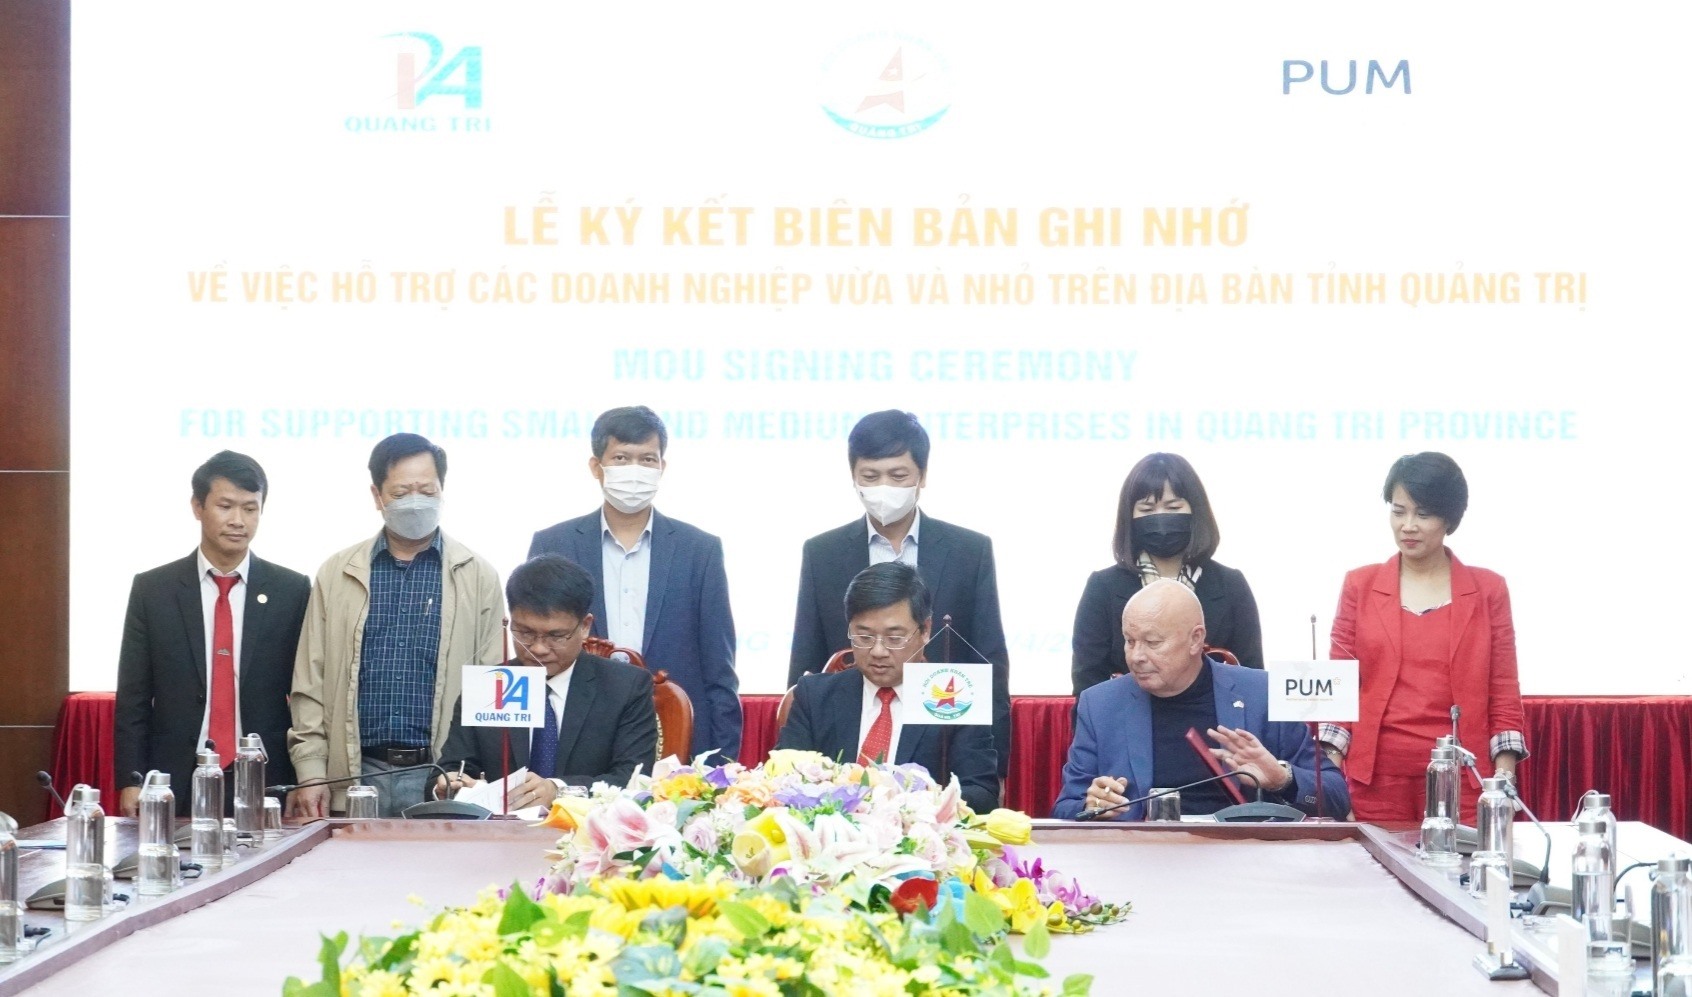 Phó Chủ tịch UBND tỉnh Hoàng Nam chứng kiến lễ ký kết biên bản ghi nhớ về việc PUM hỗ trợ các doanh nghiệp vừa và nhỏ trên địa bàn tỉnh Quảng Trị - Ảnh: K.S